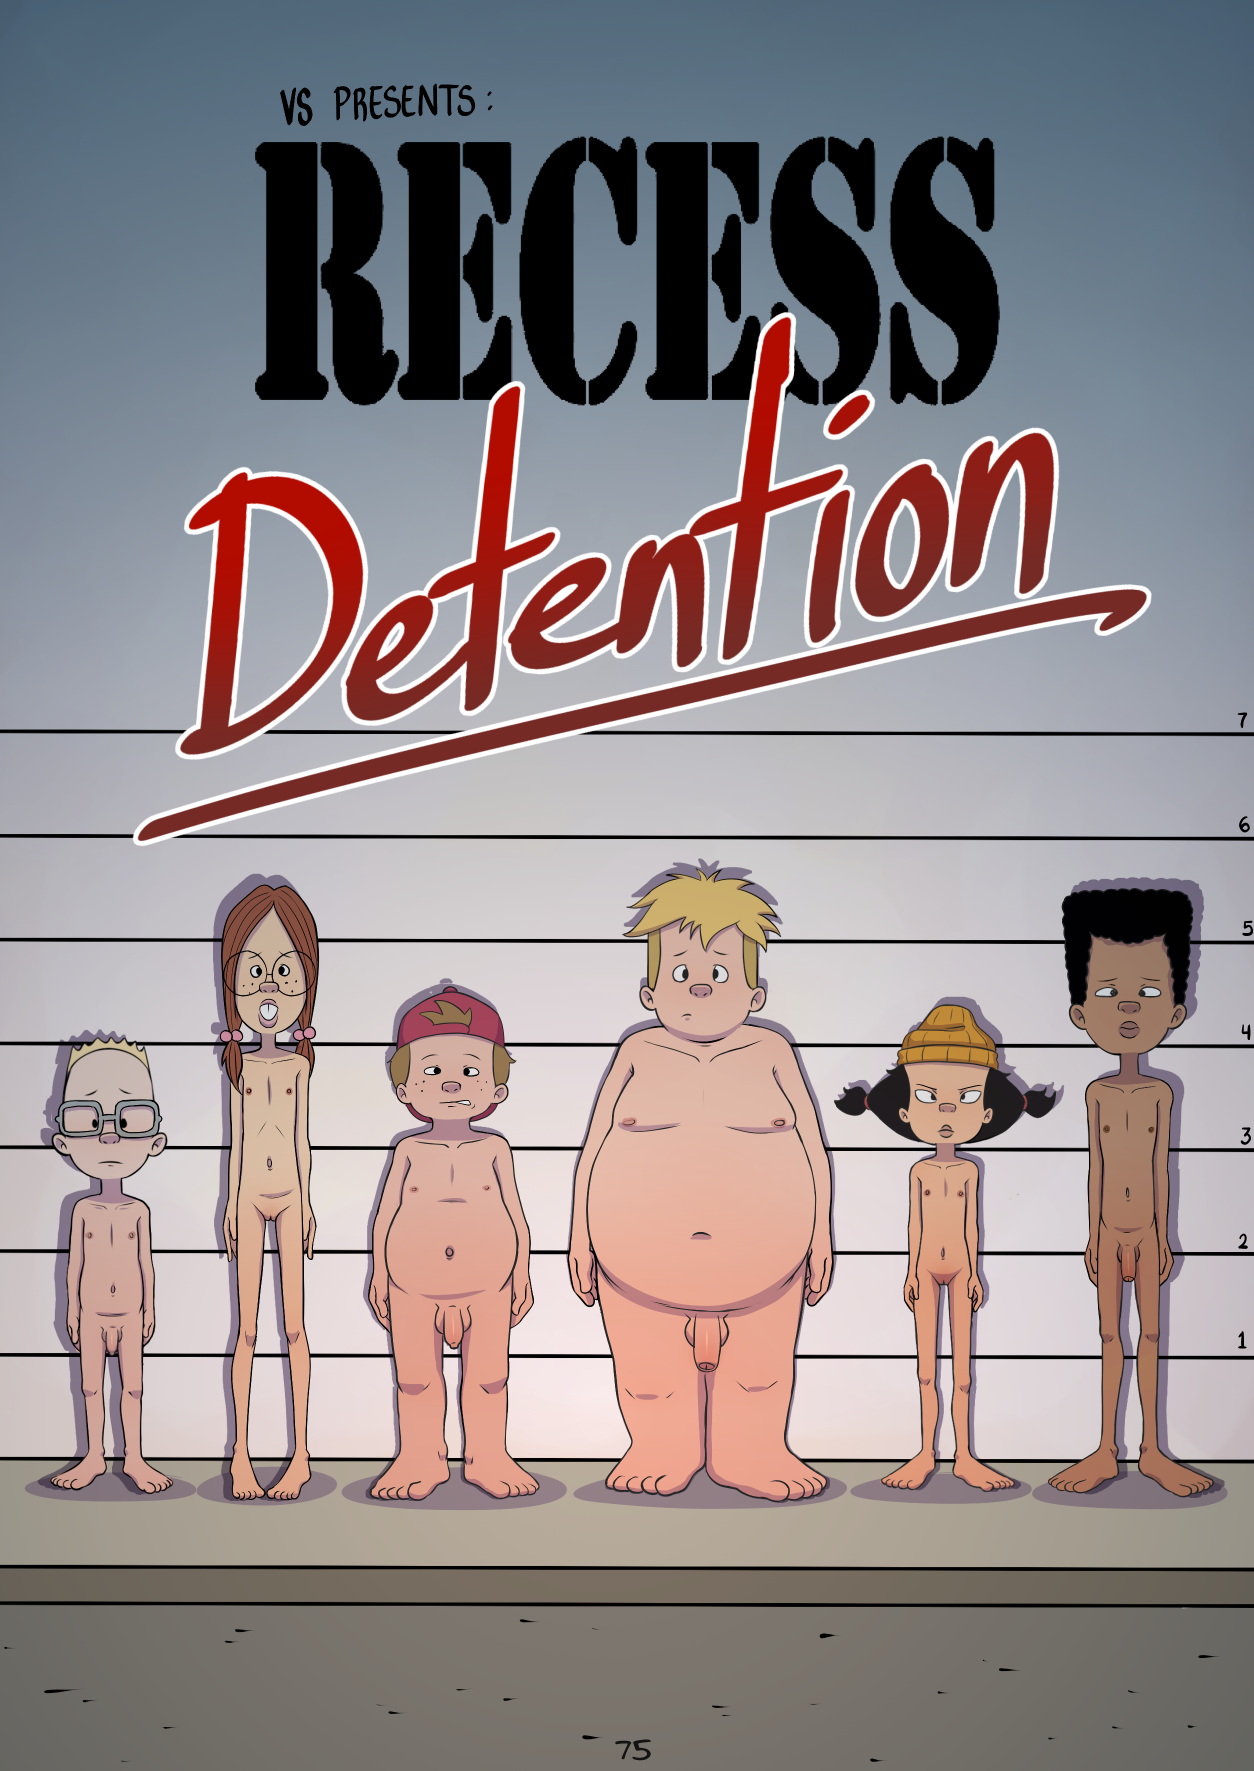 Recess - Detention porn comic picture 2